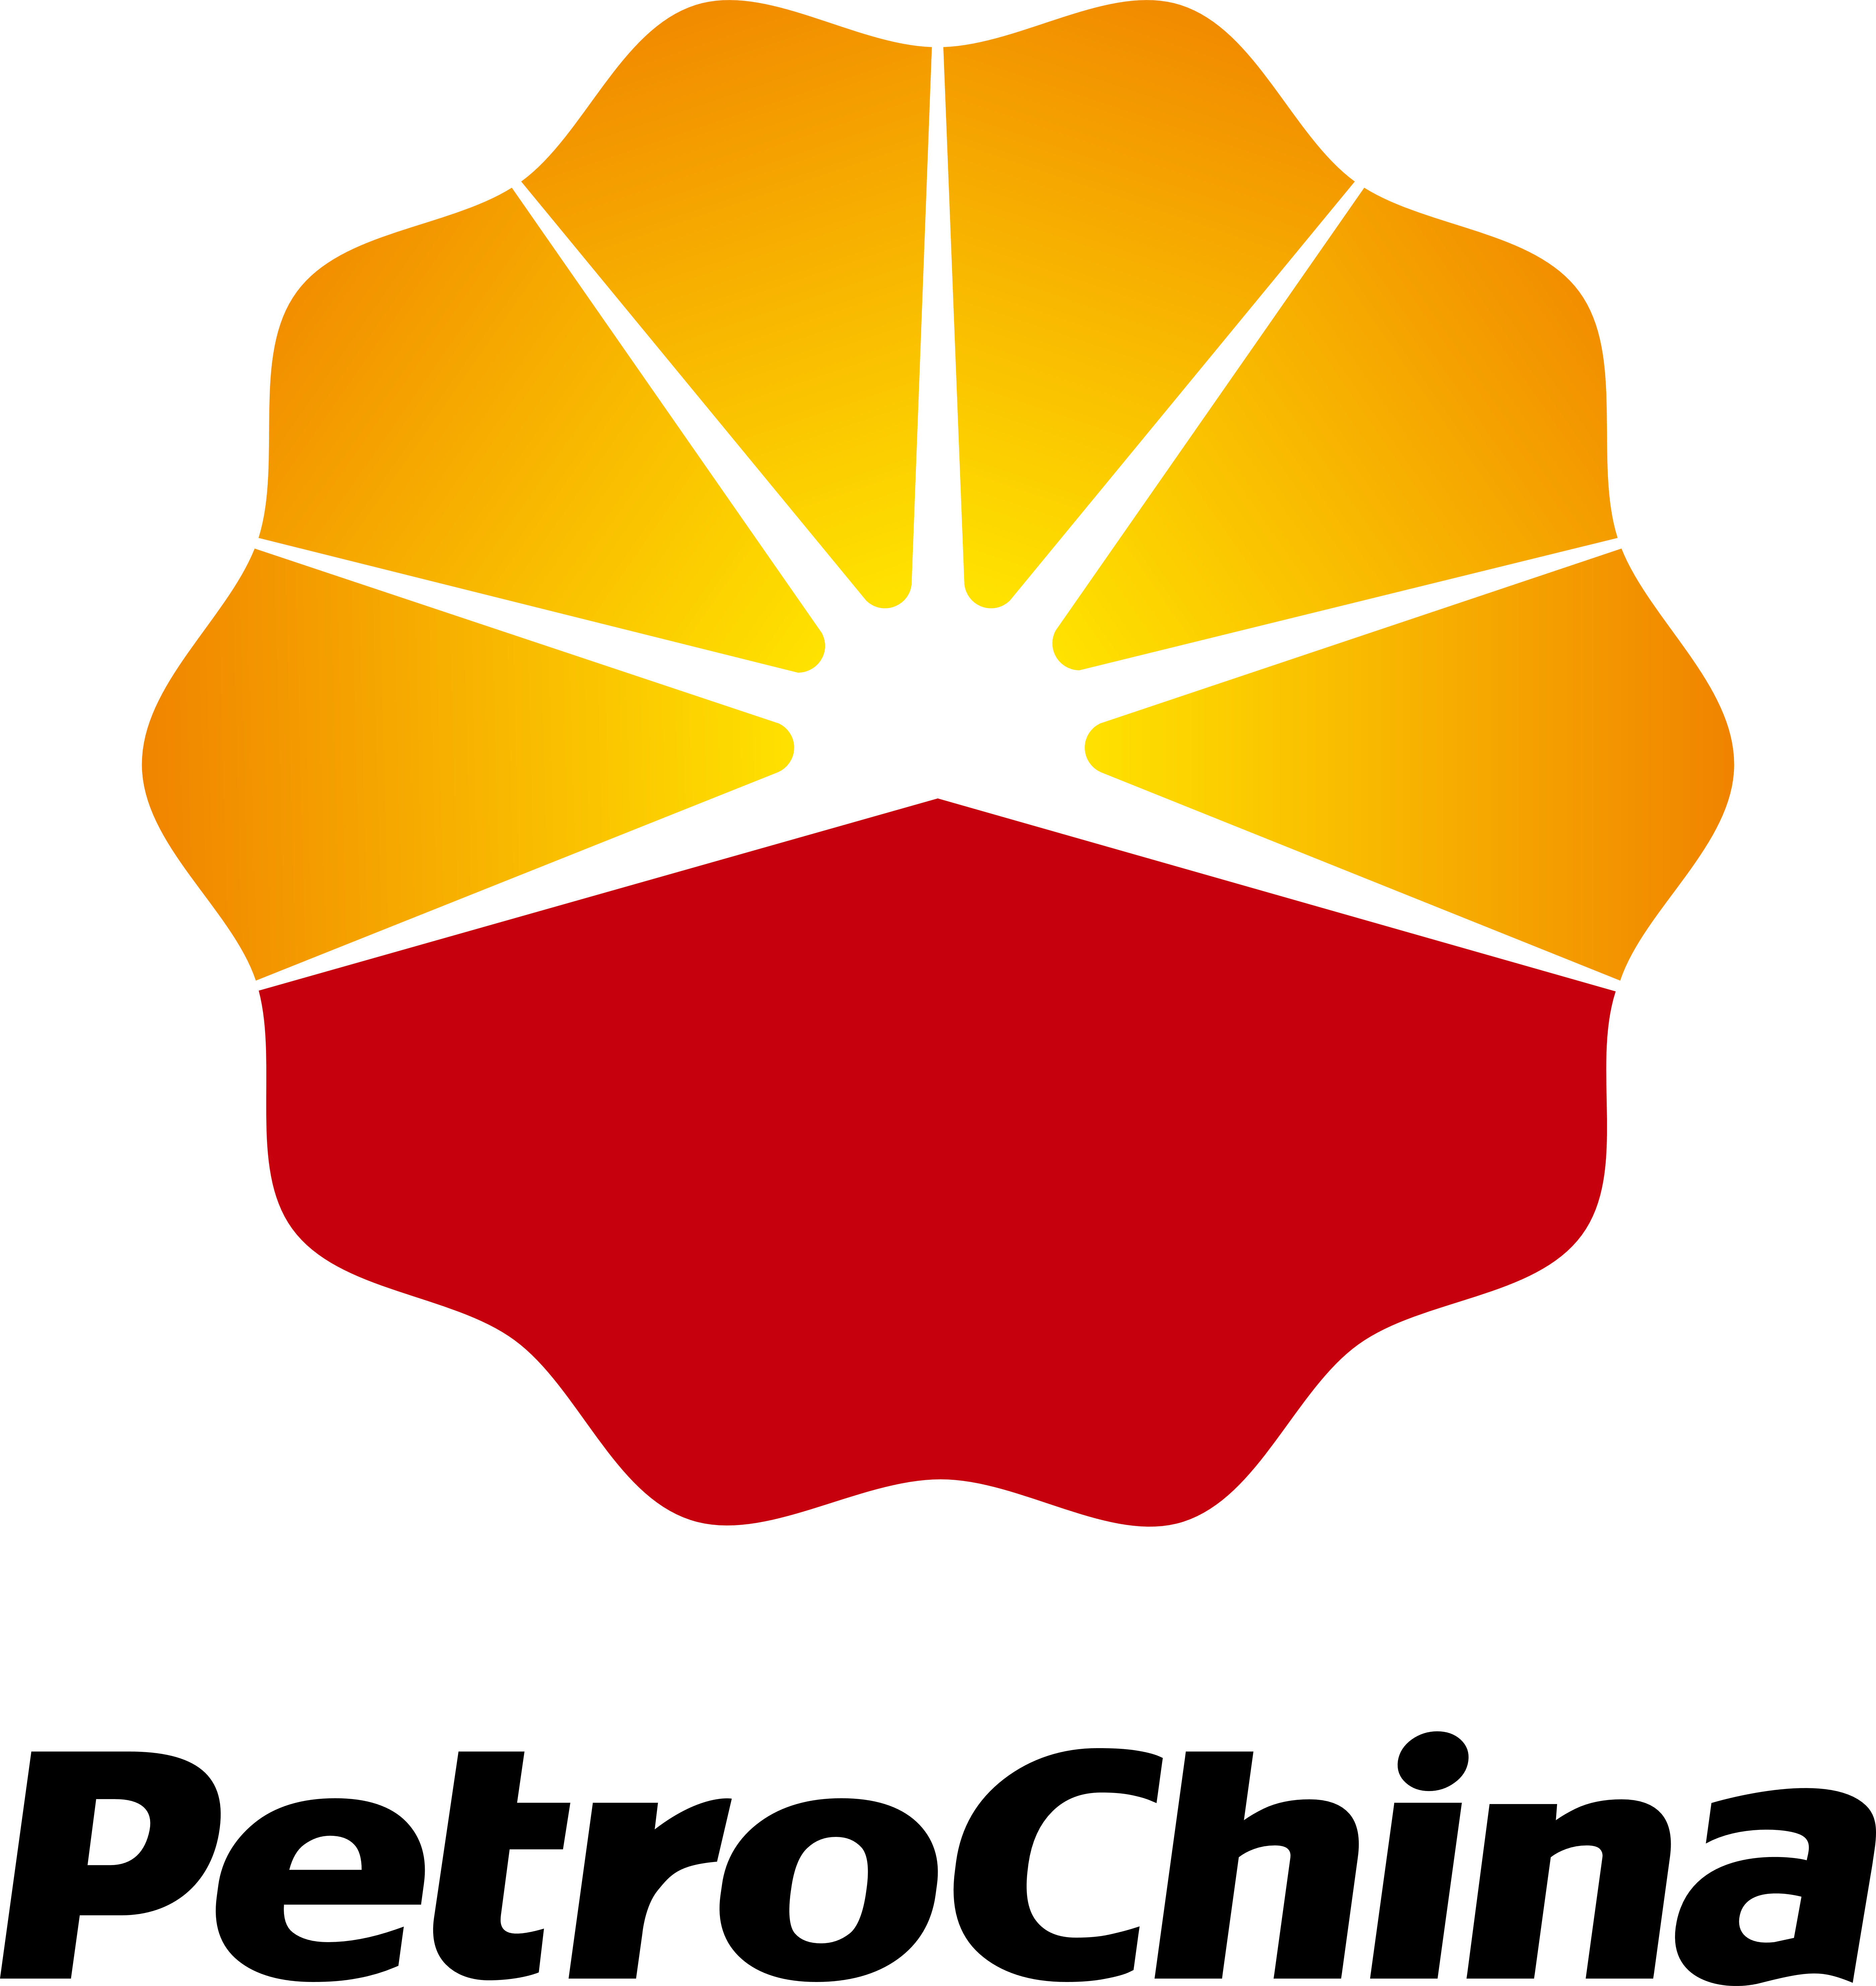 PetroChina Logo - PetroChina